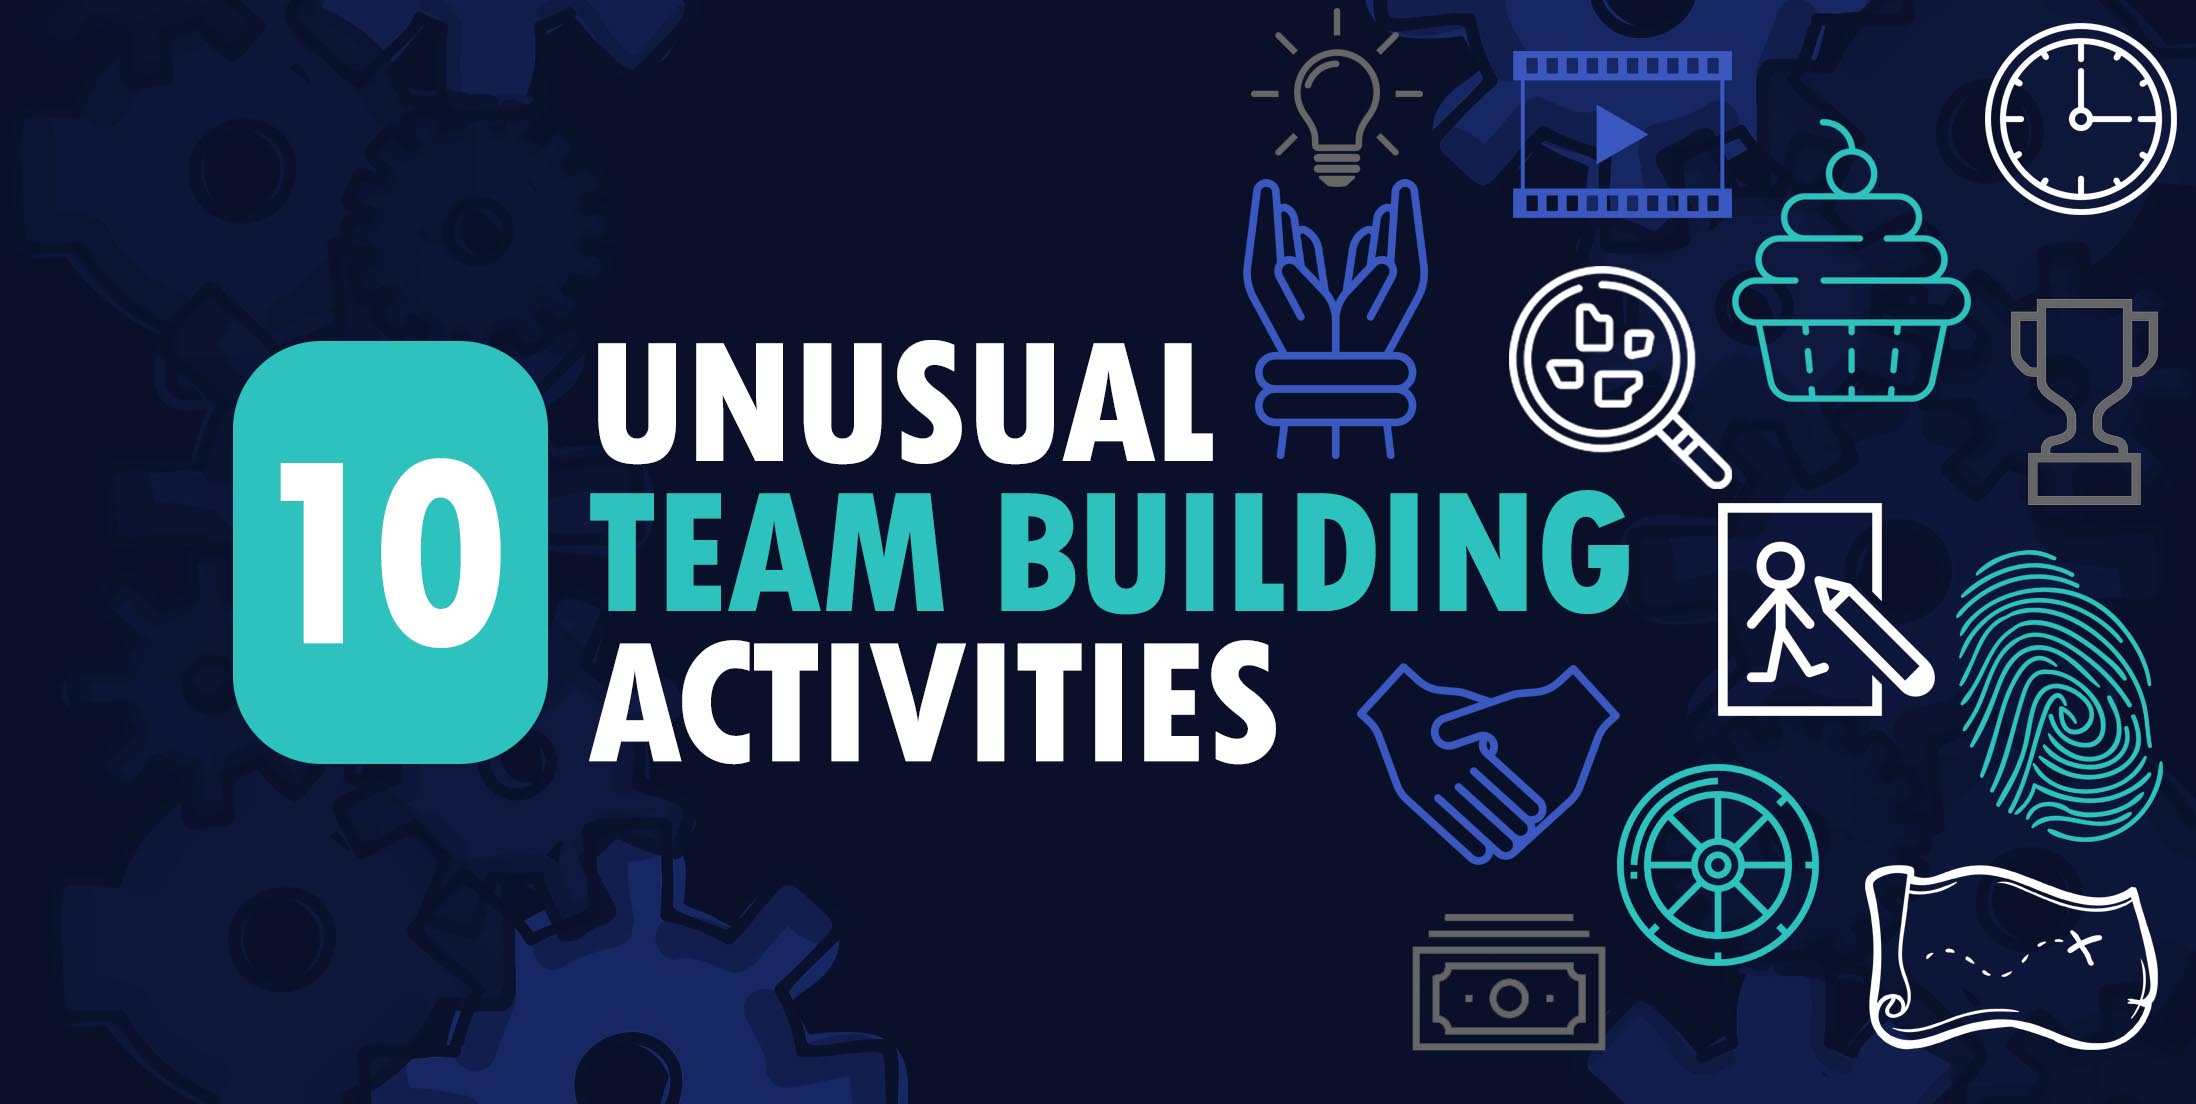 10 Unusual Team Building Activities